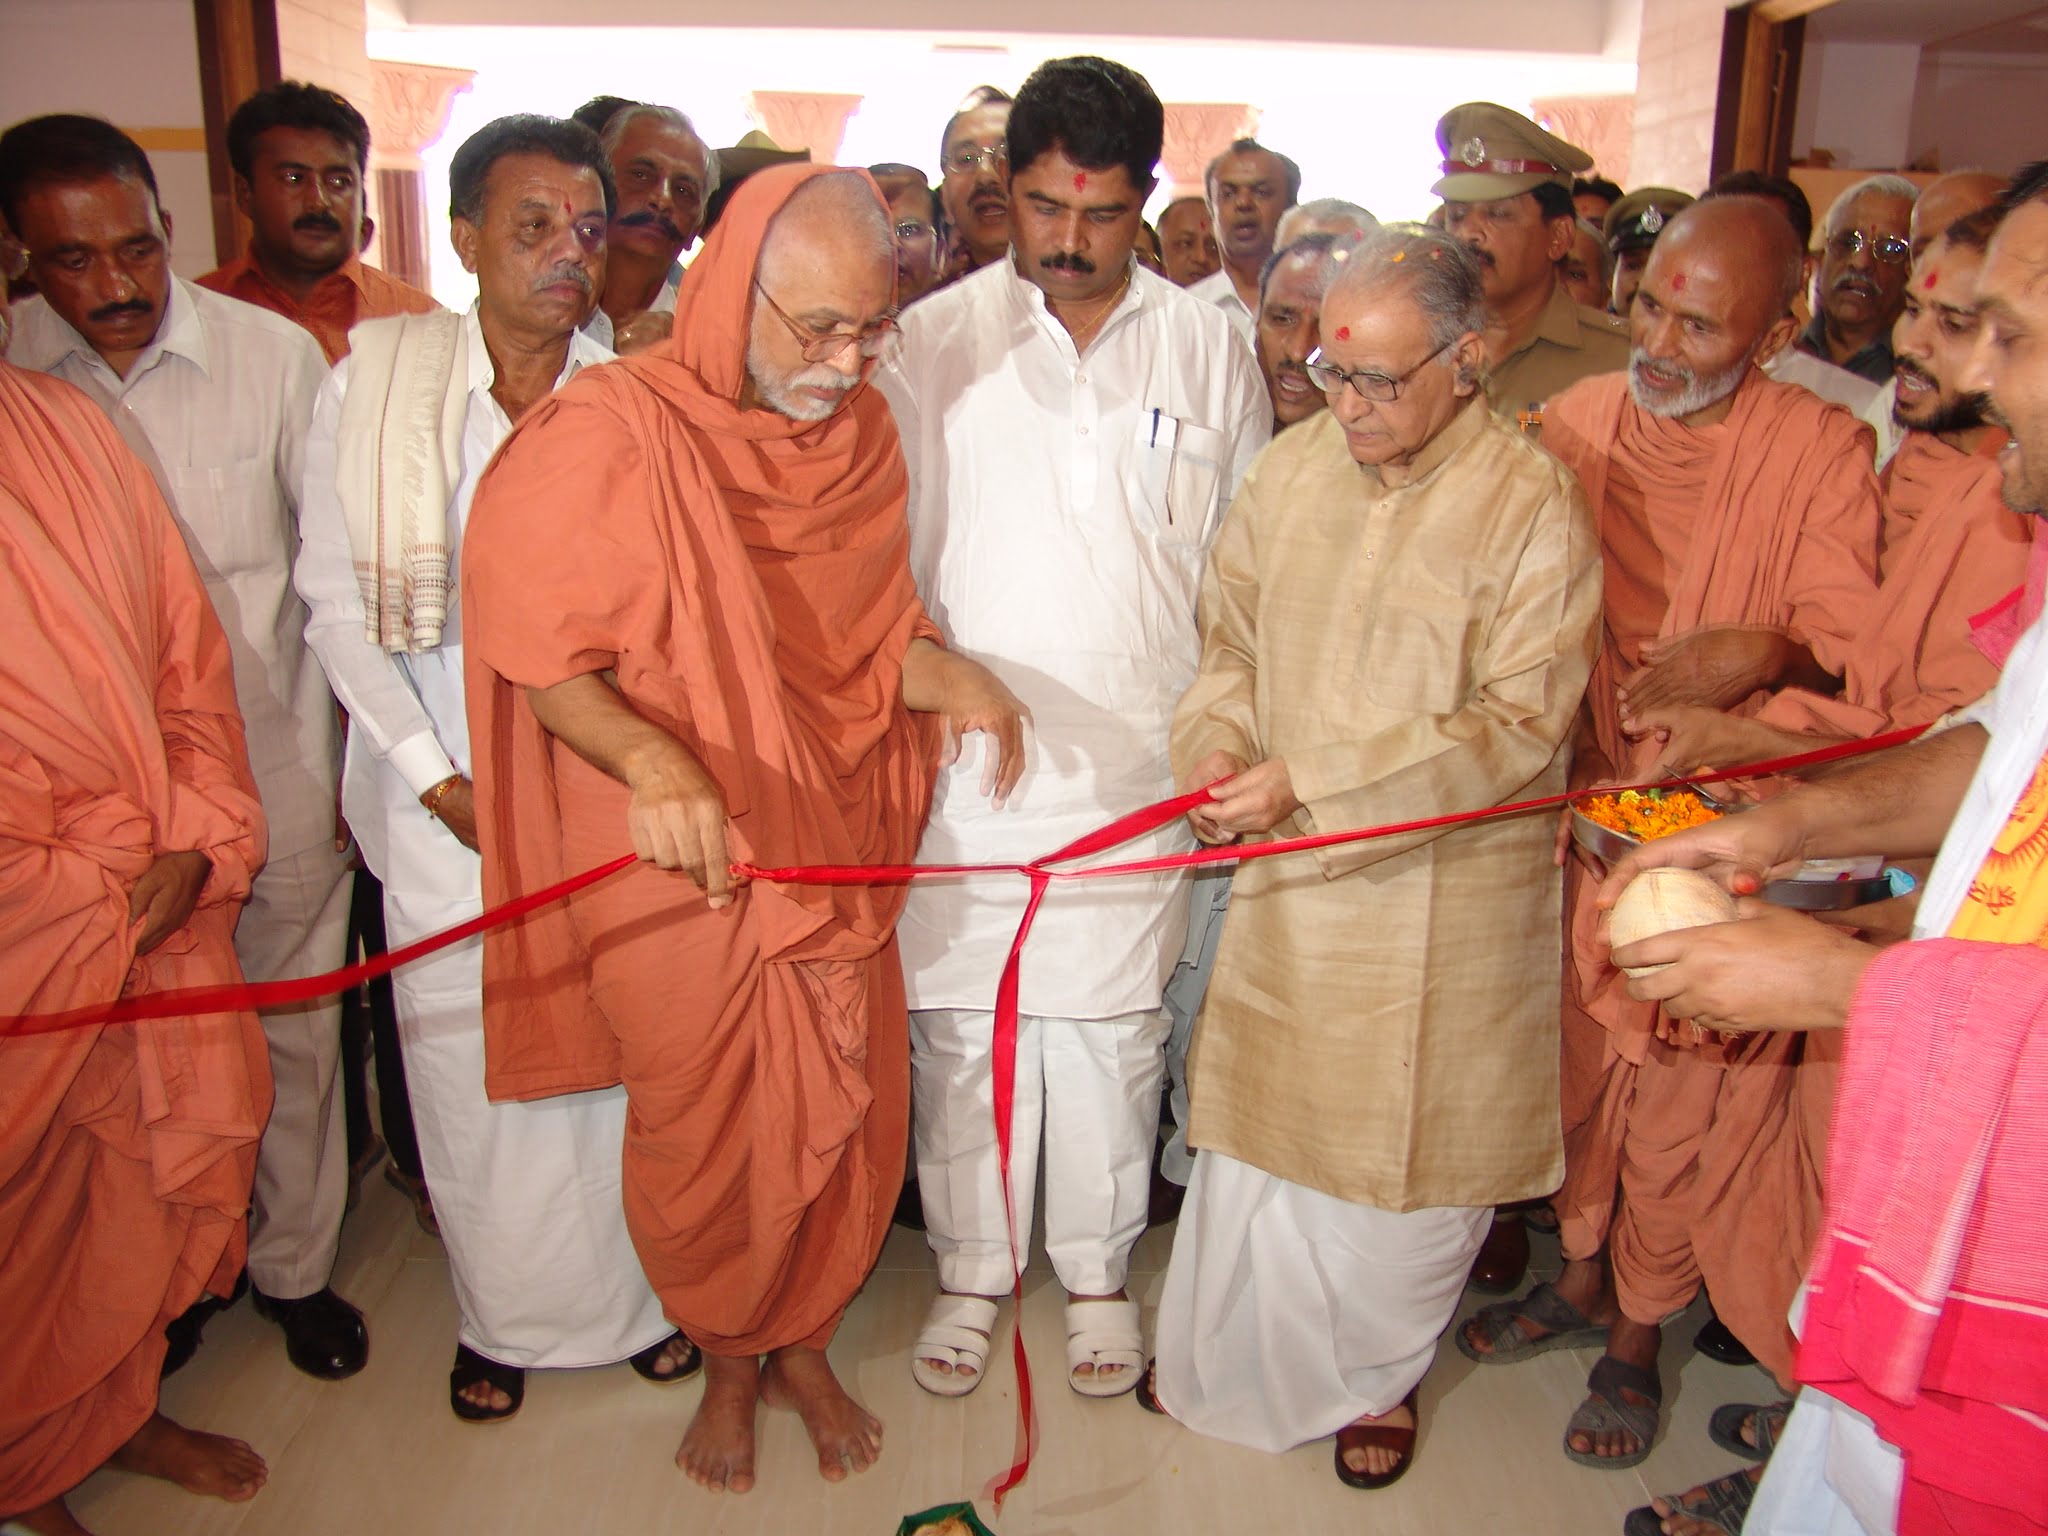 Inaugural Function at Shree Swaminarayan Gurukul Bangalore